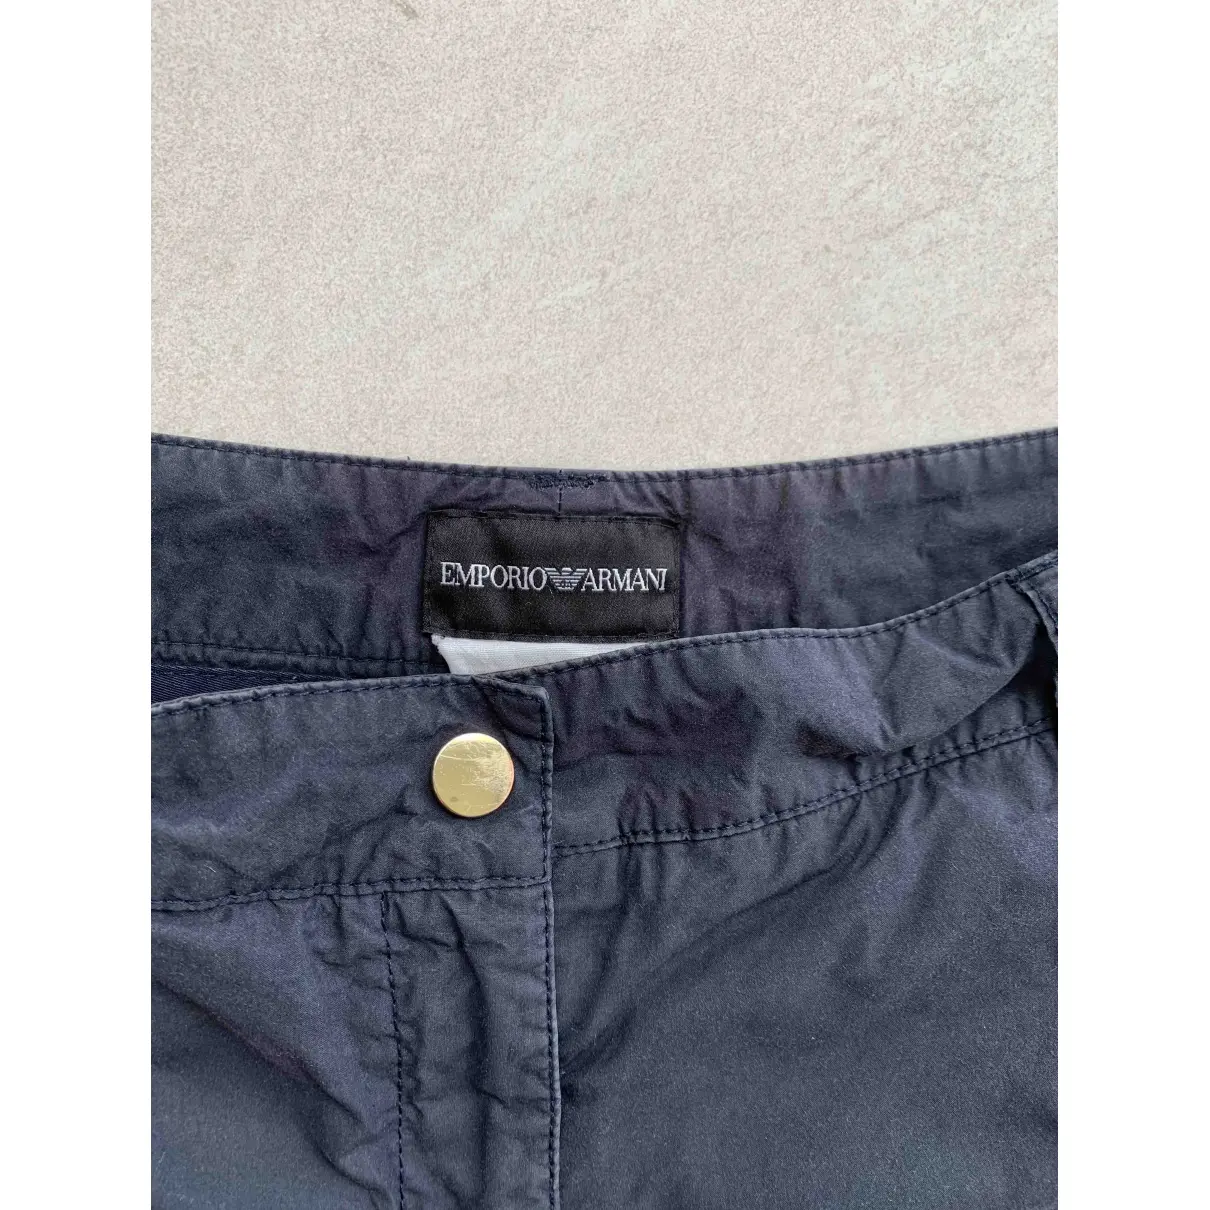 Buy Emporio Armani Shorts online